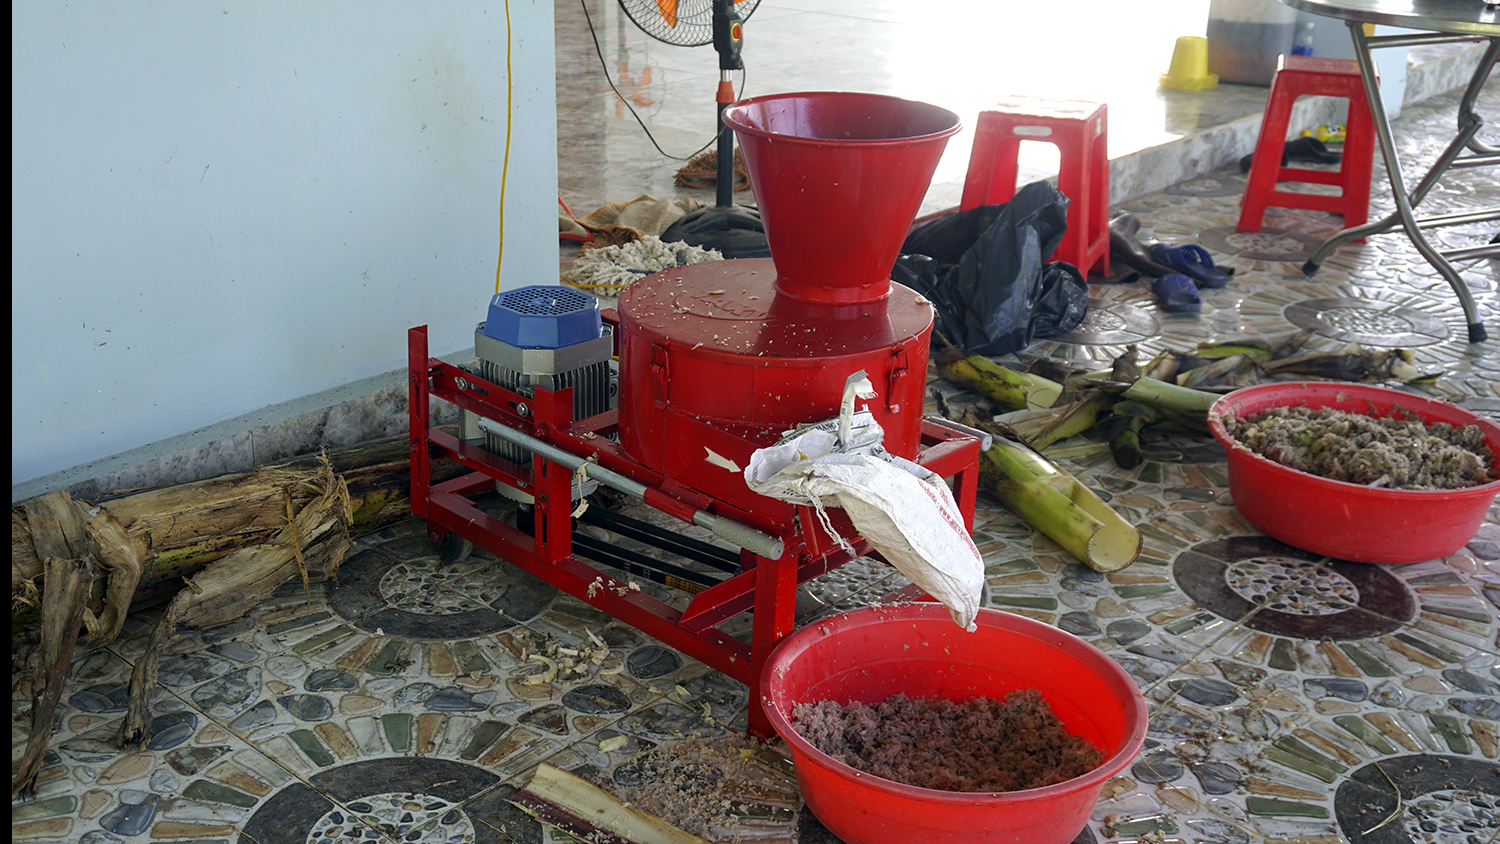 Giao máy băm chuối ở Tây Ninh cho khách 